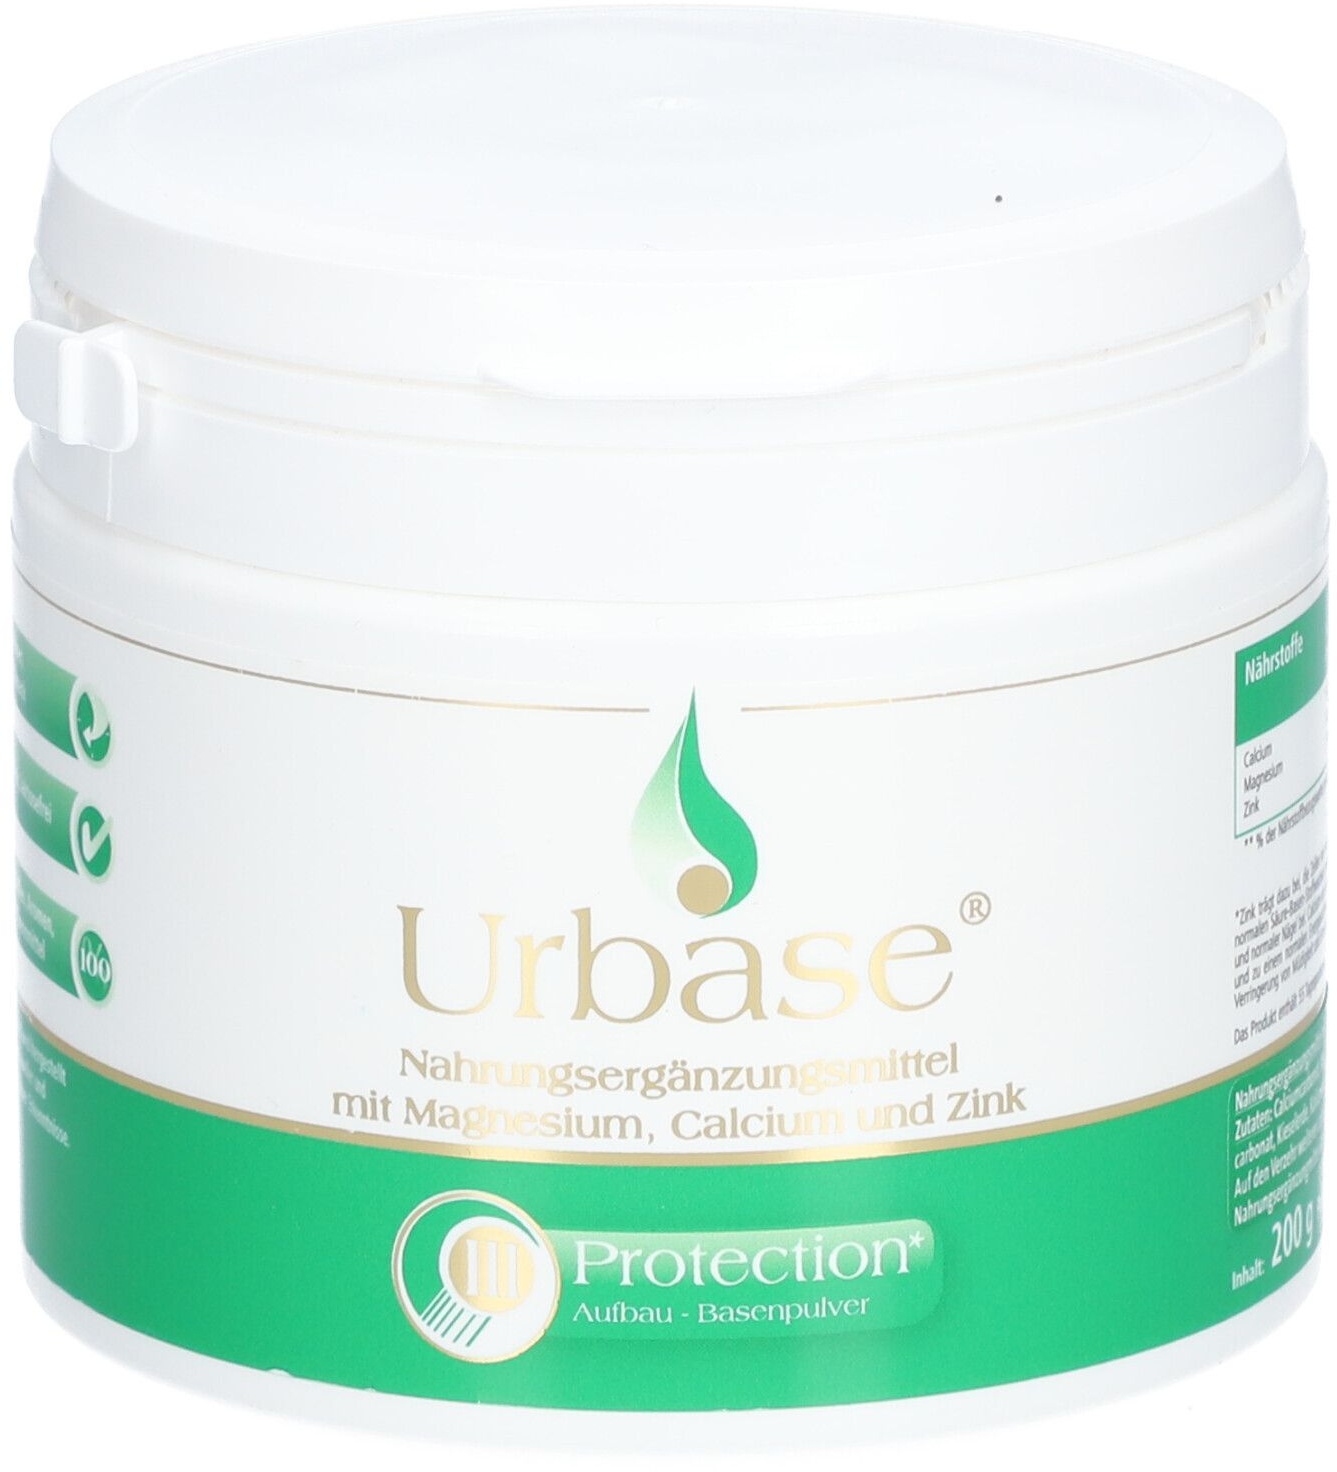 Urbase® III Protection Basenpulver